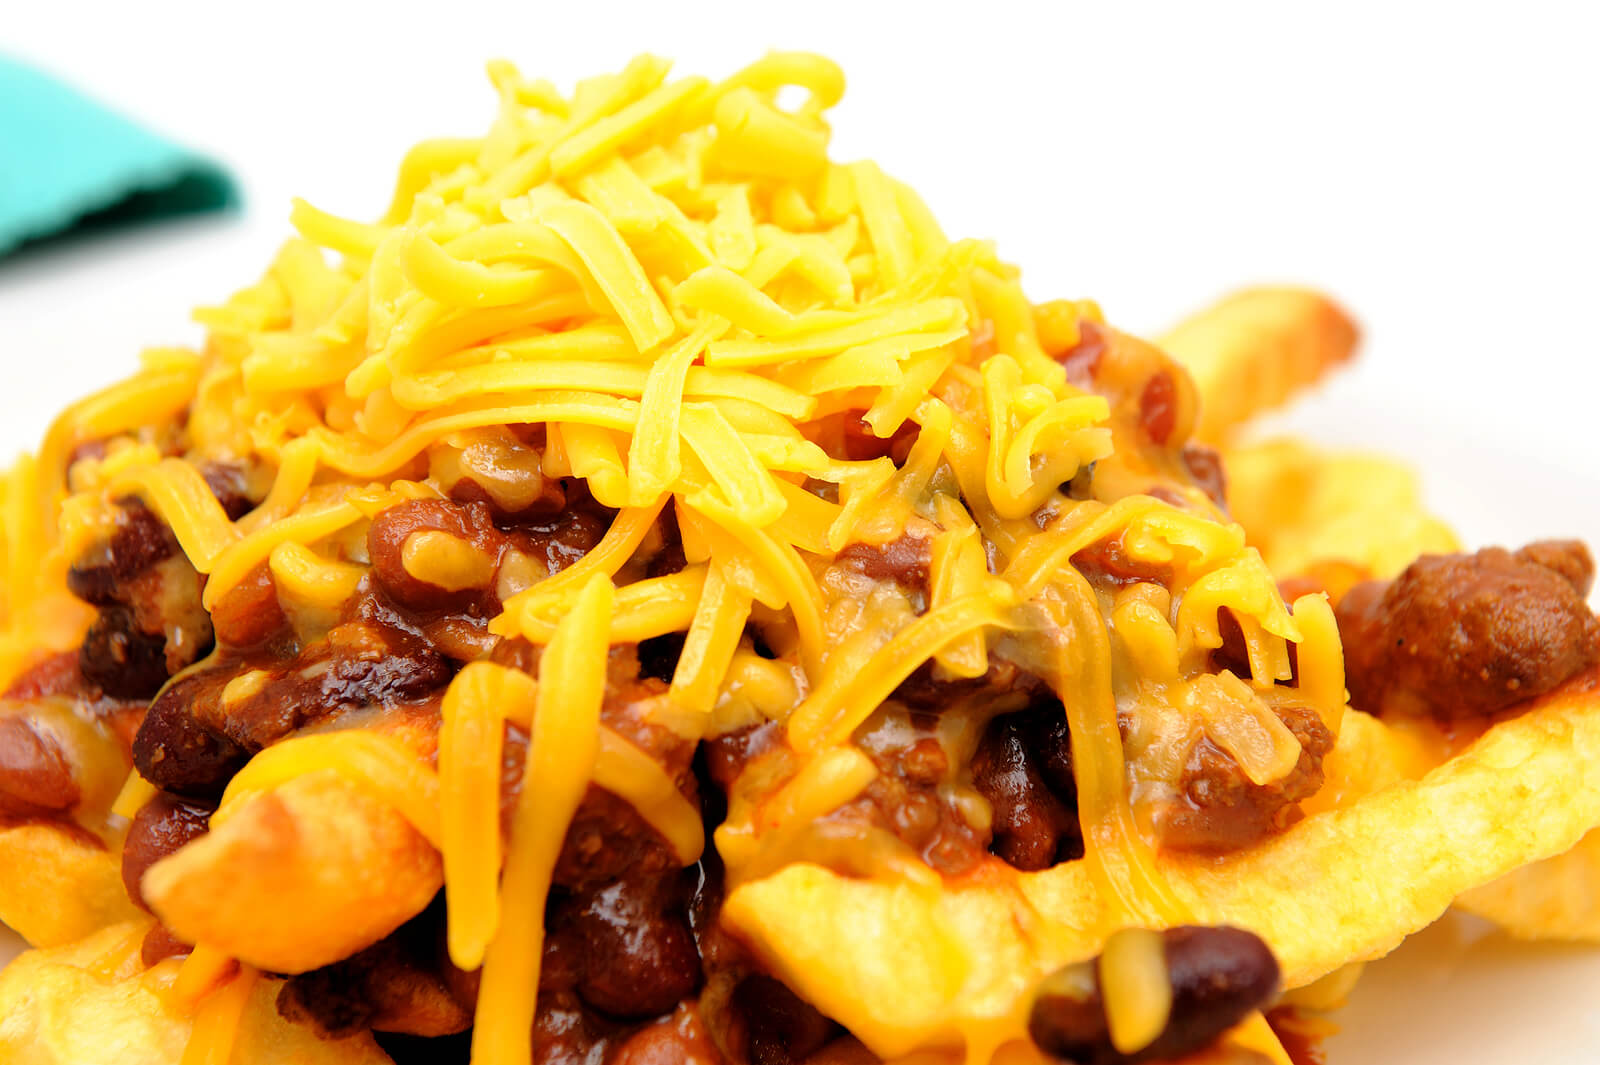 Entre los alimentos que suben colesterol están las patatas fritas